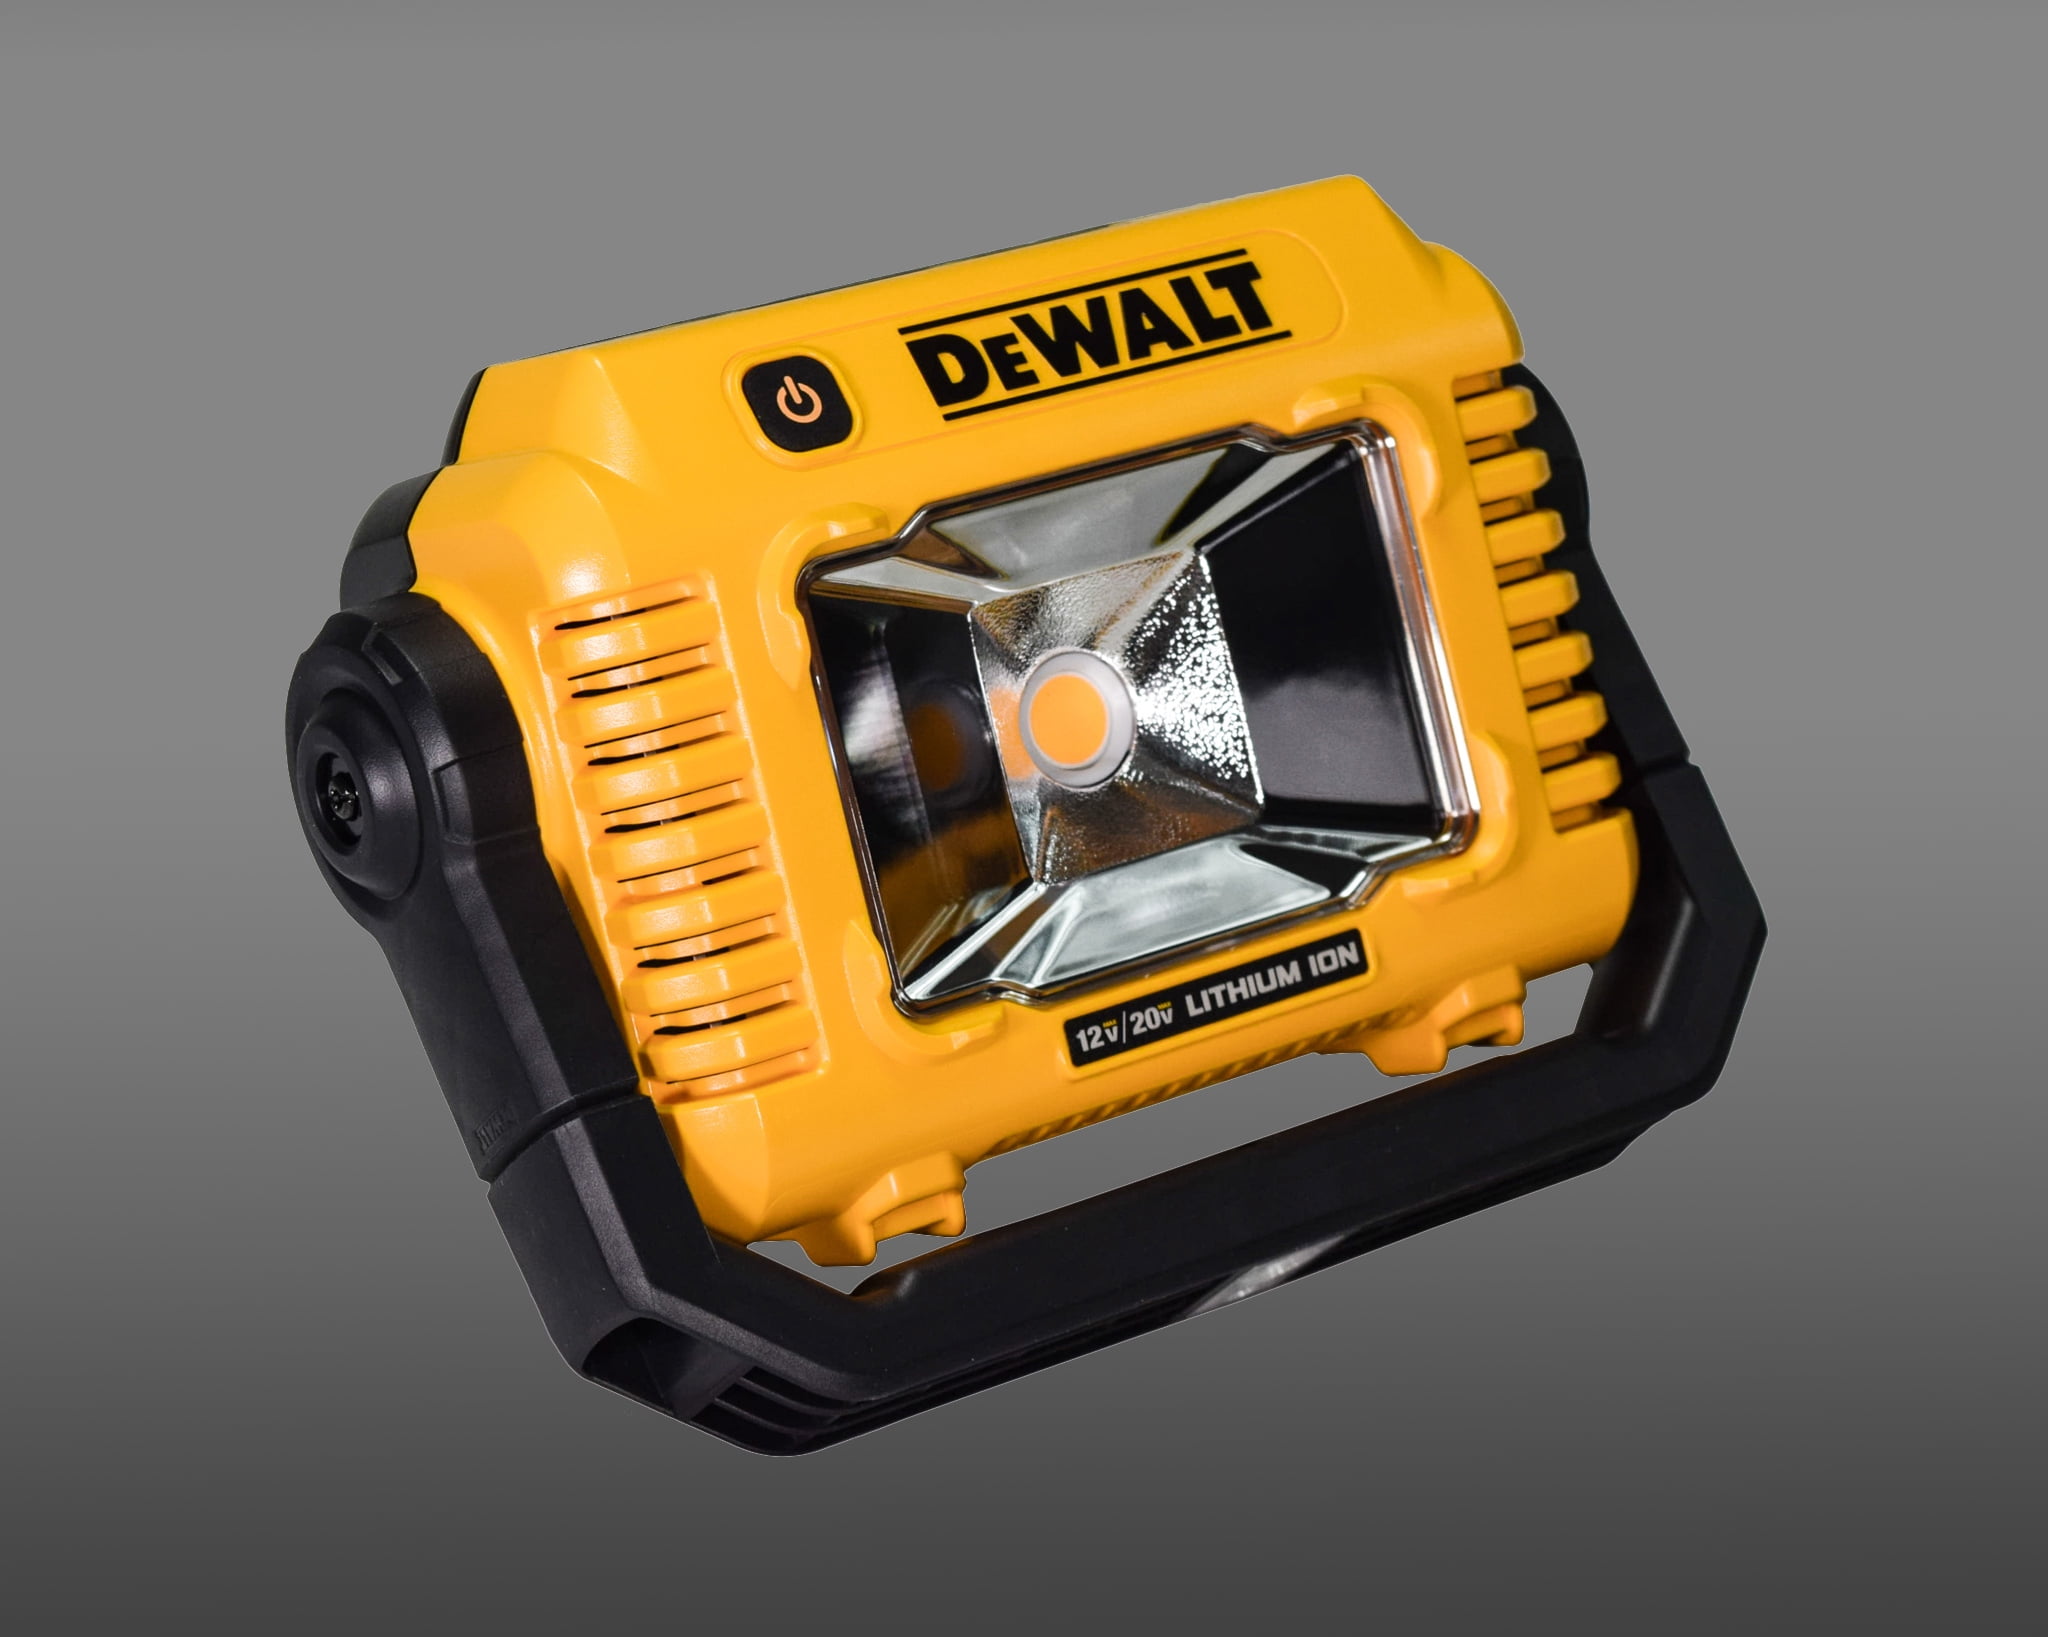 Dewalt DCL077B 12V/20V MAX Work Light, Compact, Tool Only